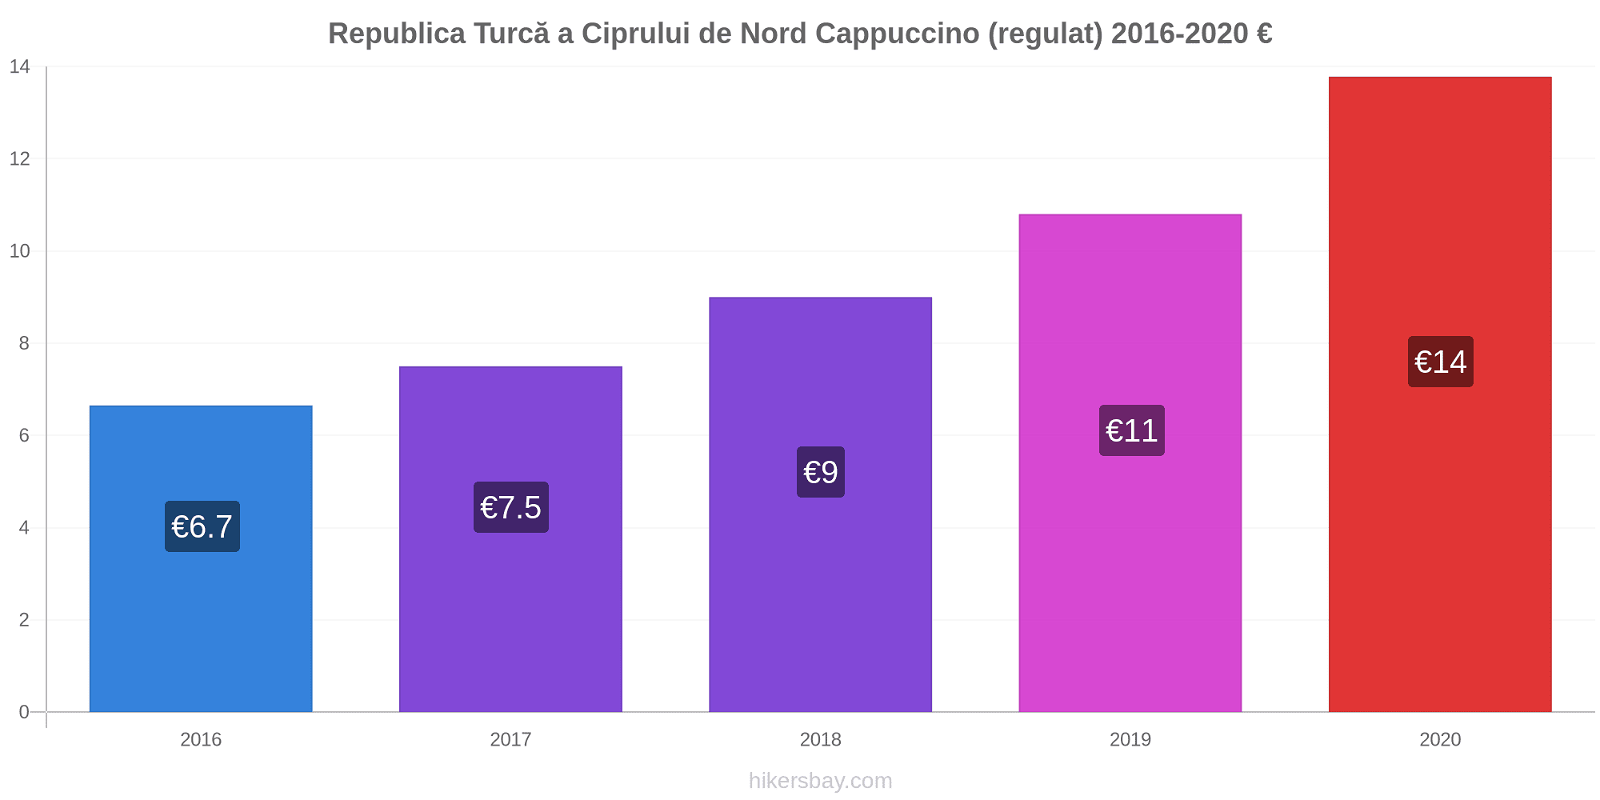 Republica Turcă a Ciprului de Nord modificări de preț Cappuccino (regulat) hikersbay.com